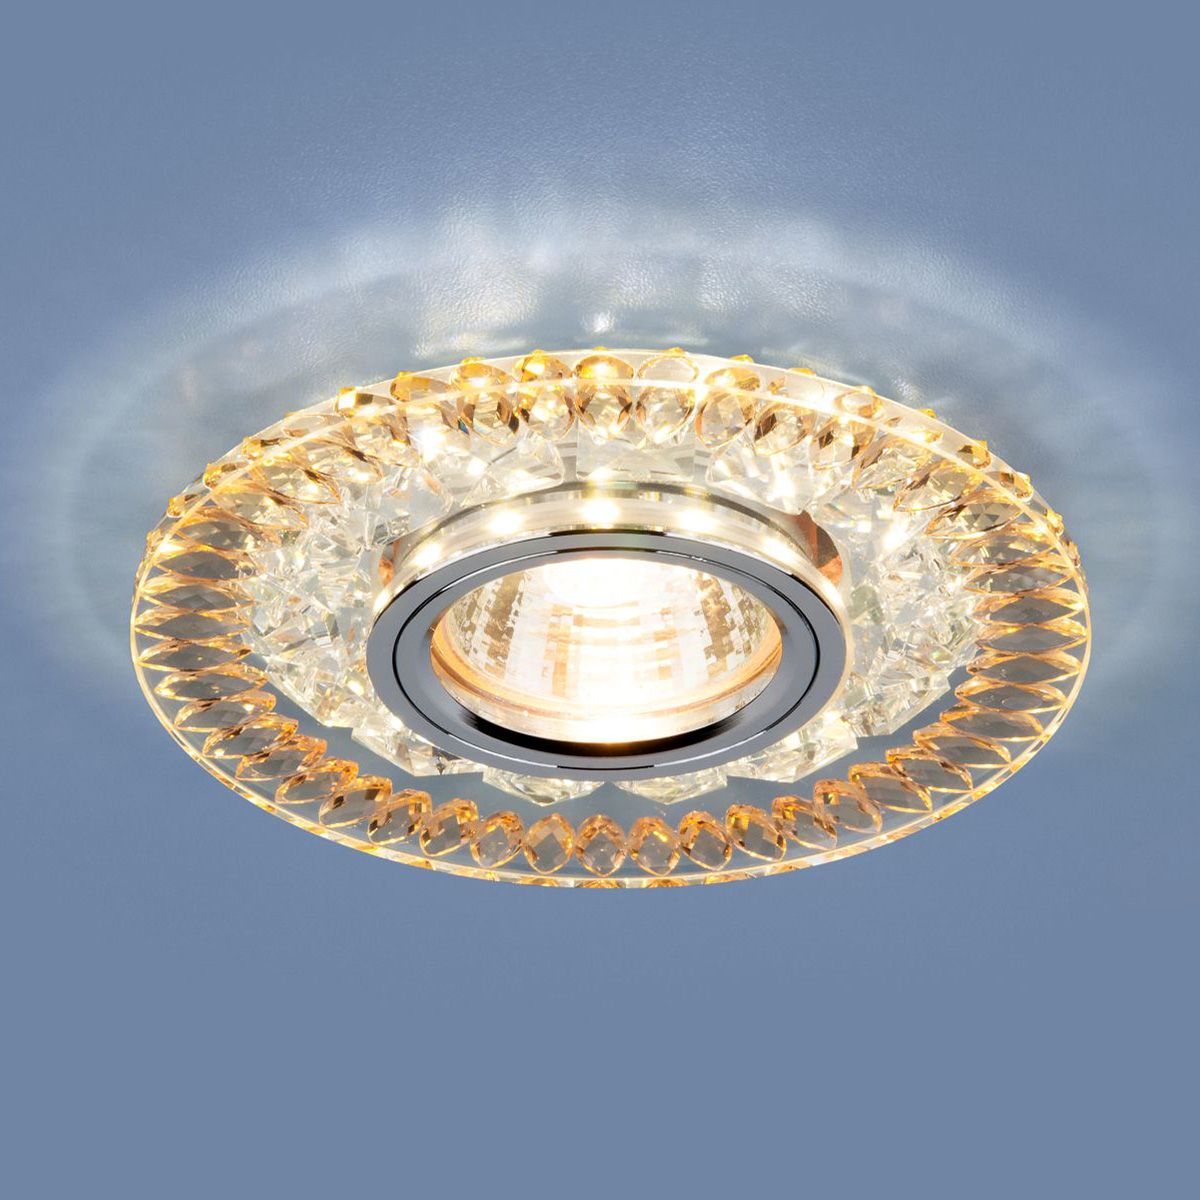 Точечный светильник с LED подсветкой 2198 MR16 CL/GD прозрачный/золото. Фото 1